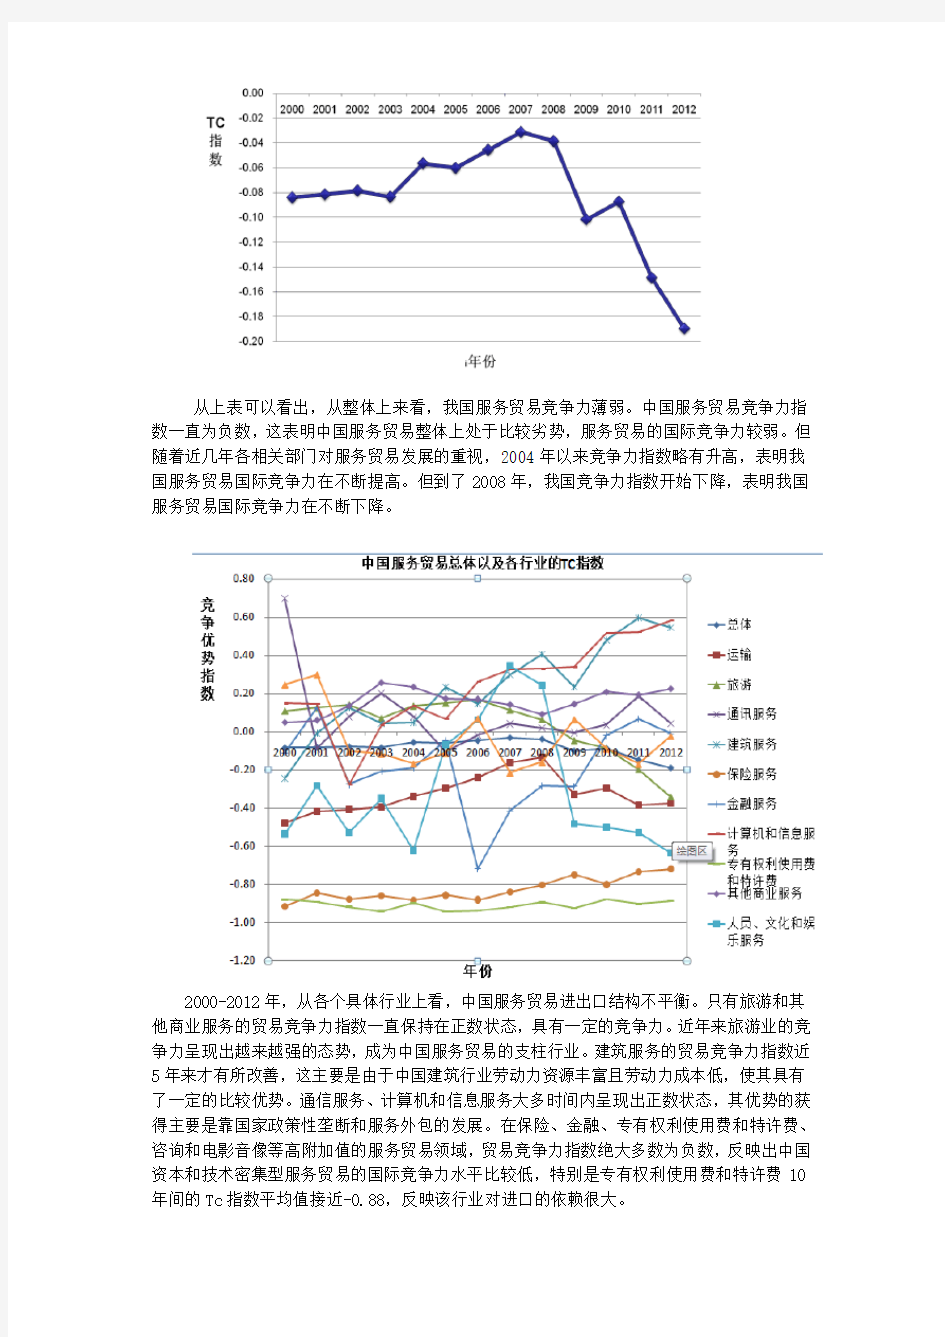 中国服务贸易总体以及各行业的TC指数和NRCA指数的分析